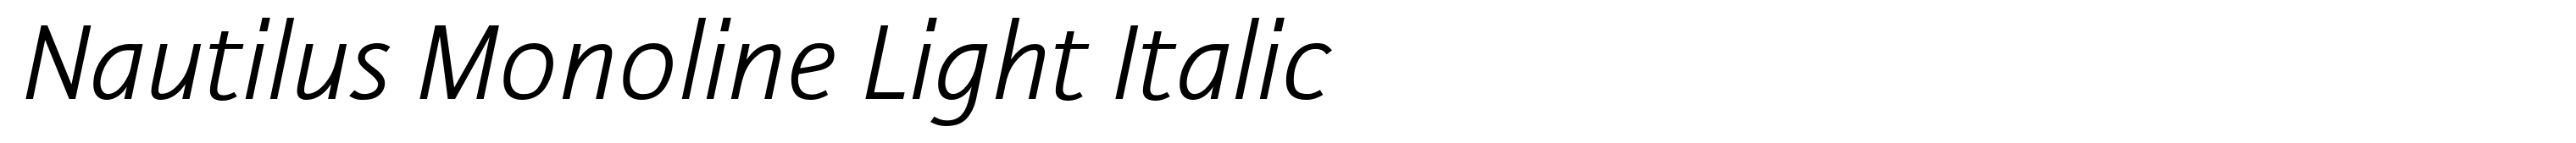 Nautilus Monoline Light Italic